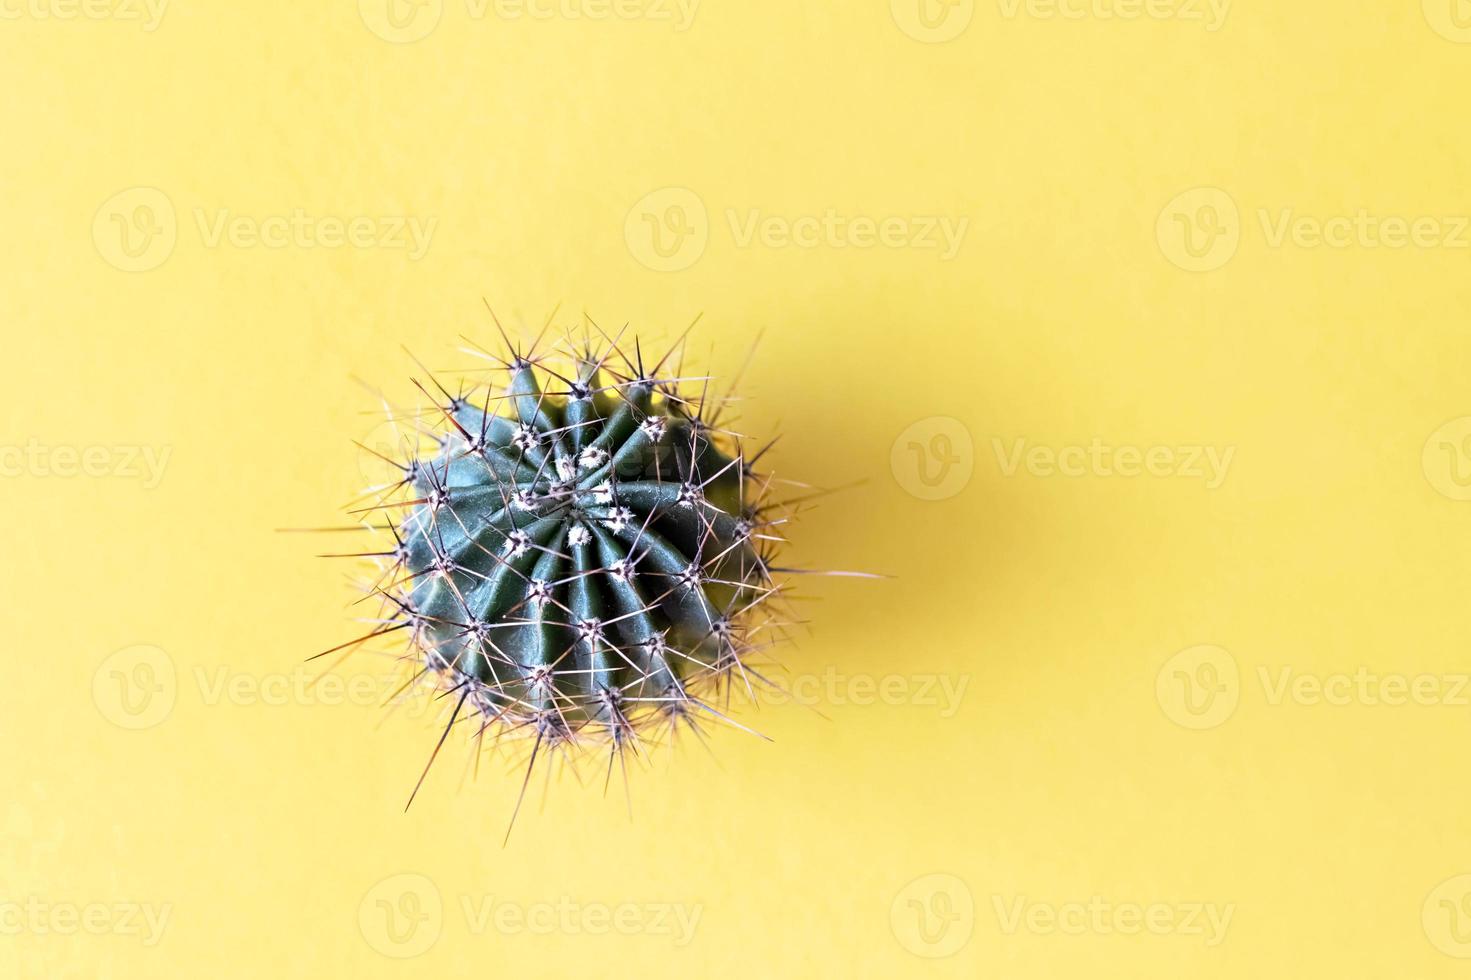 bakgrund från en kaktus på gul bakgrund. växtstruktur med taggar foto